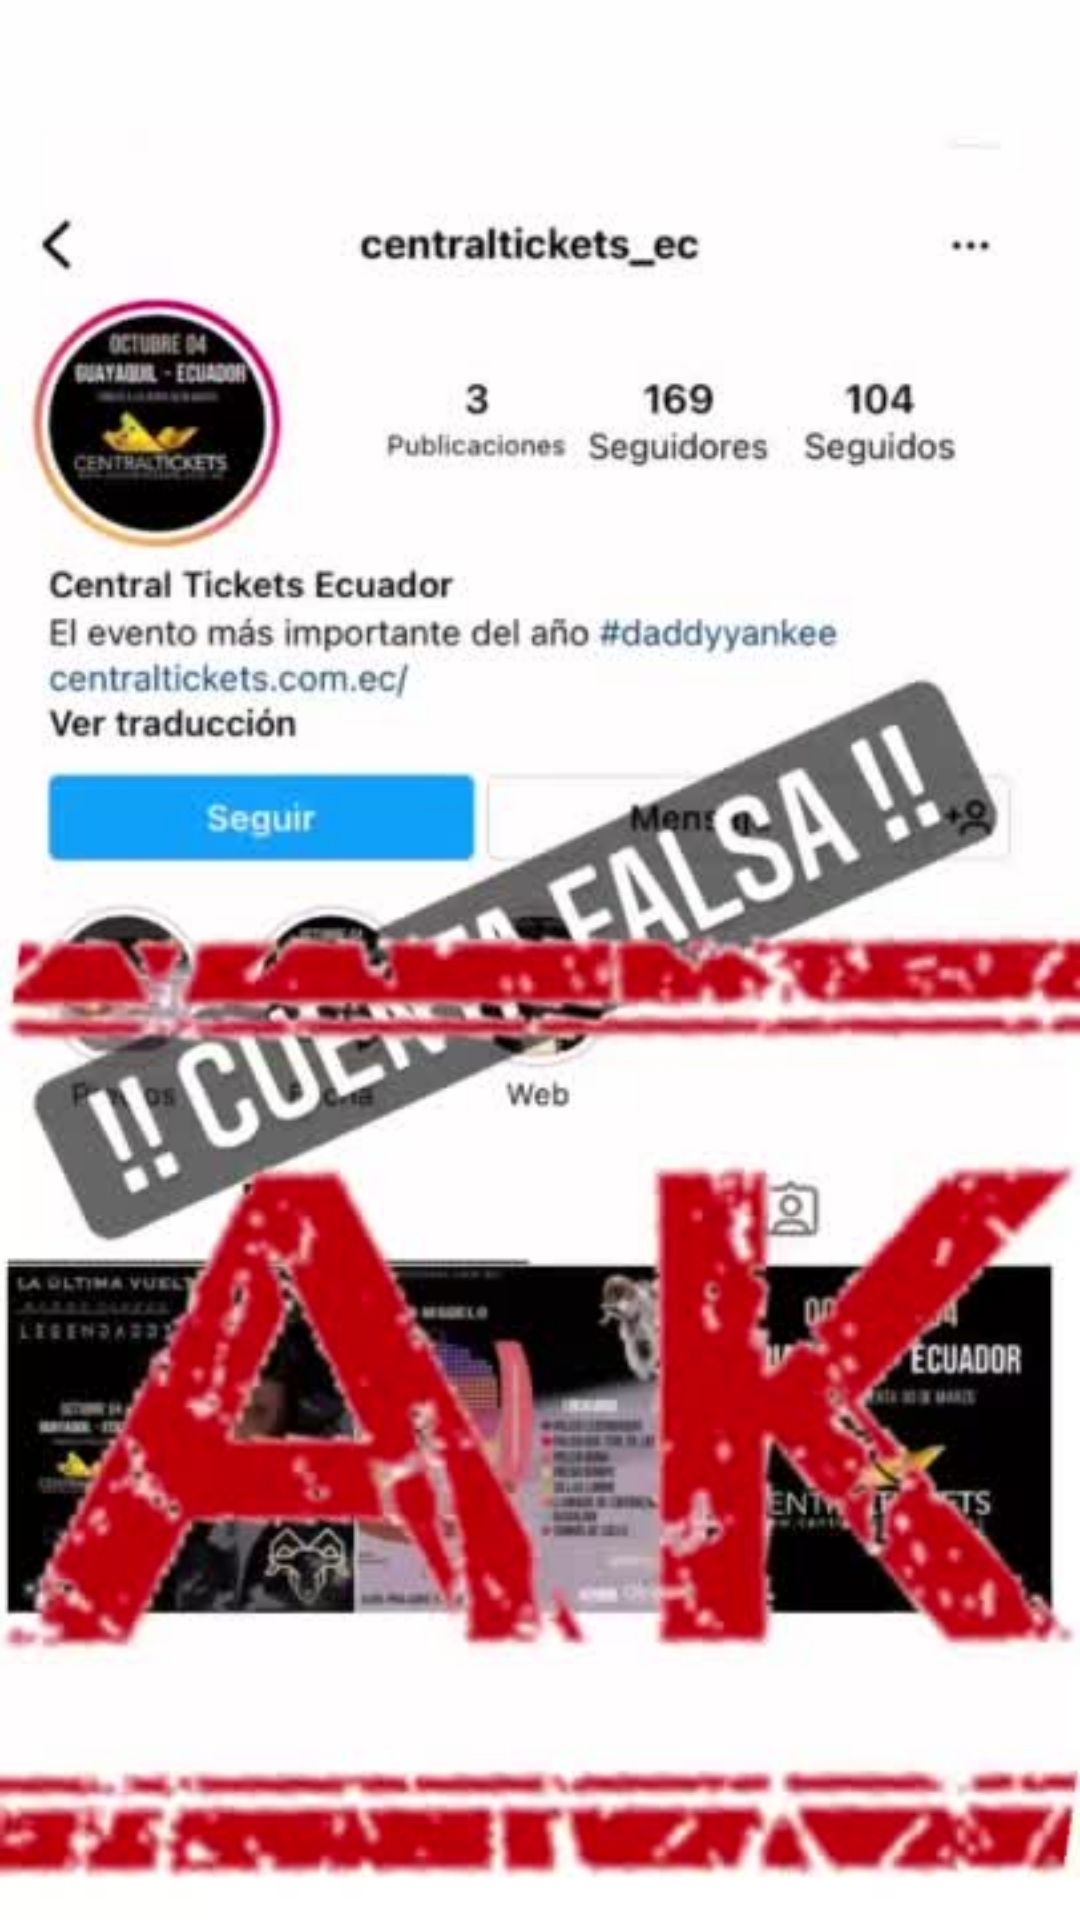 Daddy Yankee Guayaquil Central Tickets Nueva Fecha de Venta (2)